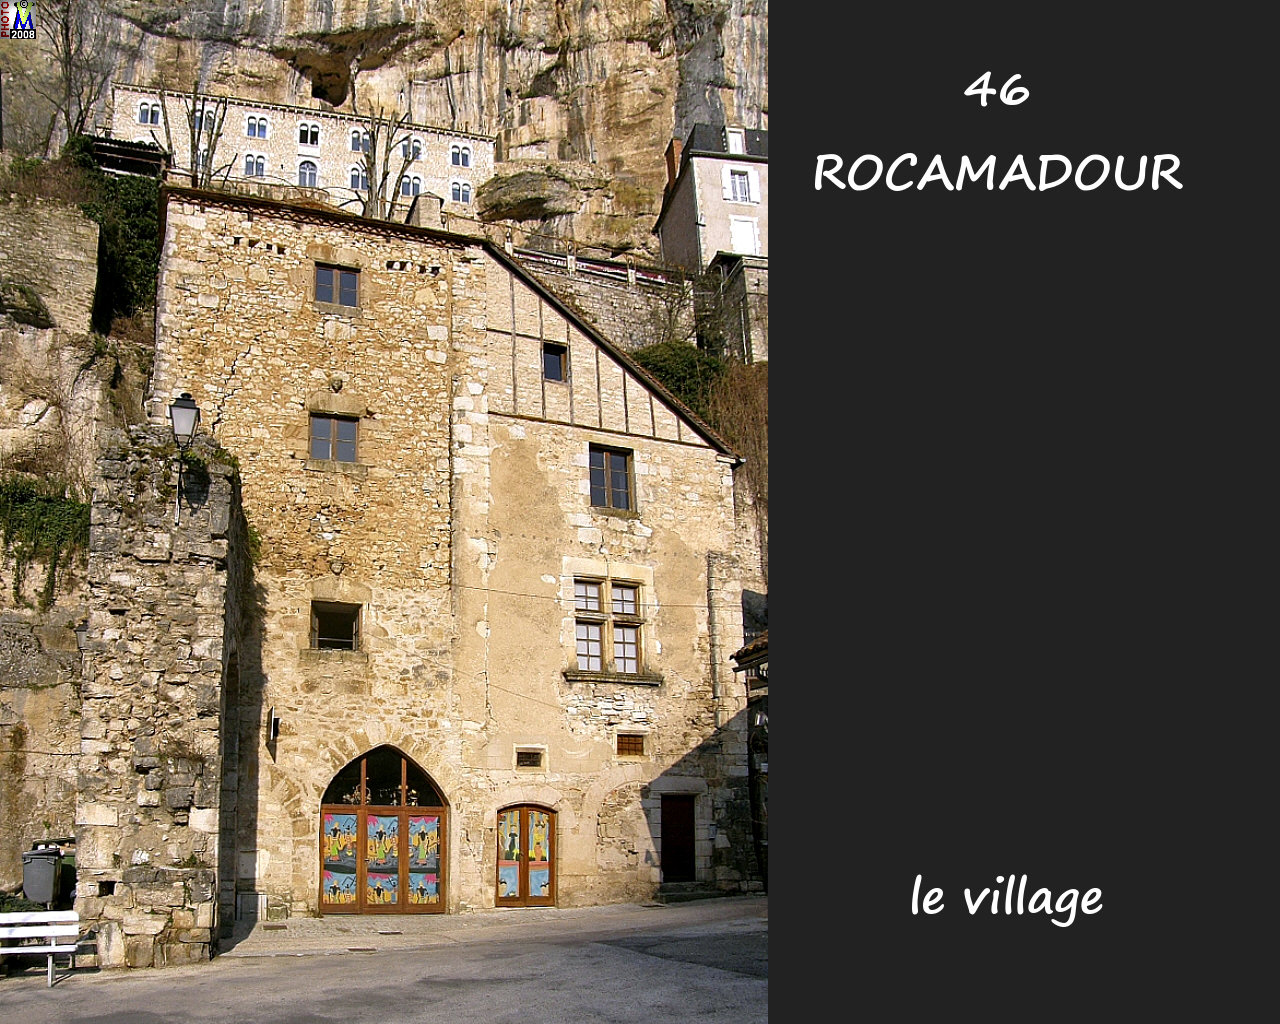 46ROCAMADOUR_village_122.jpg